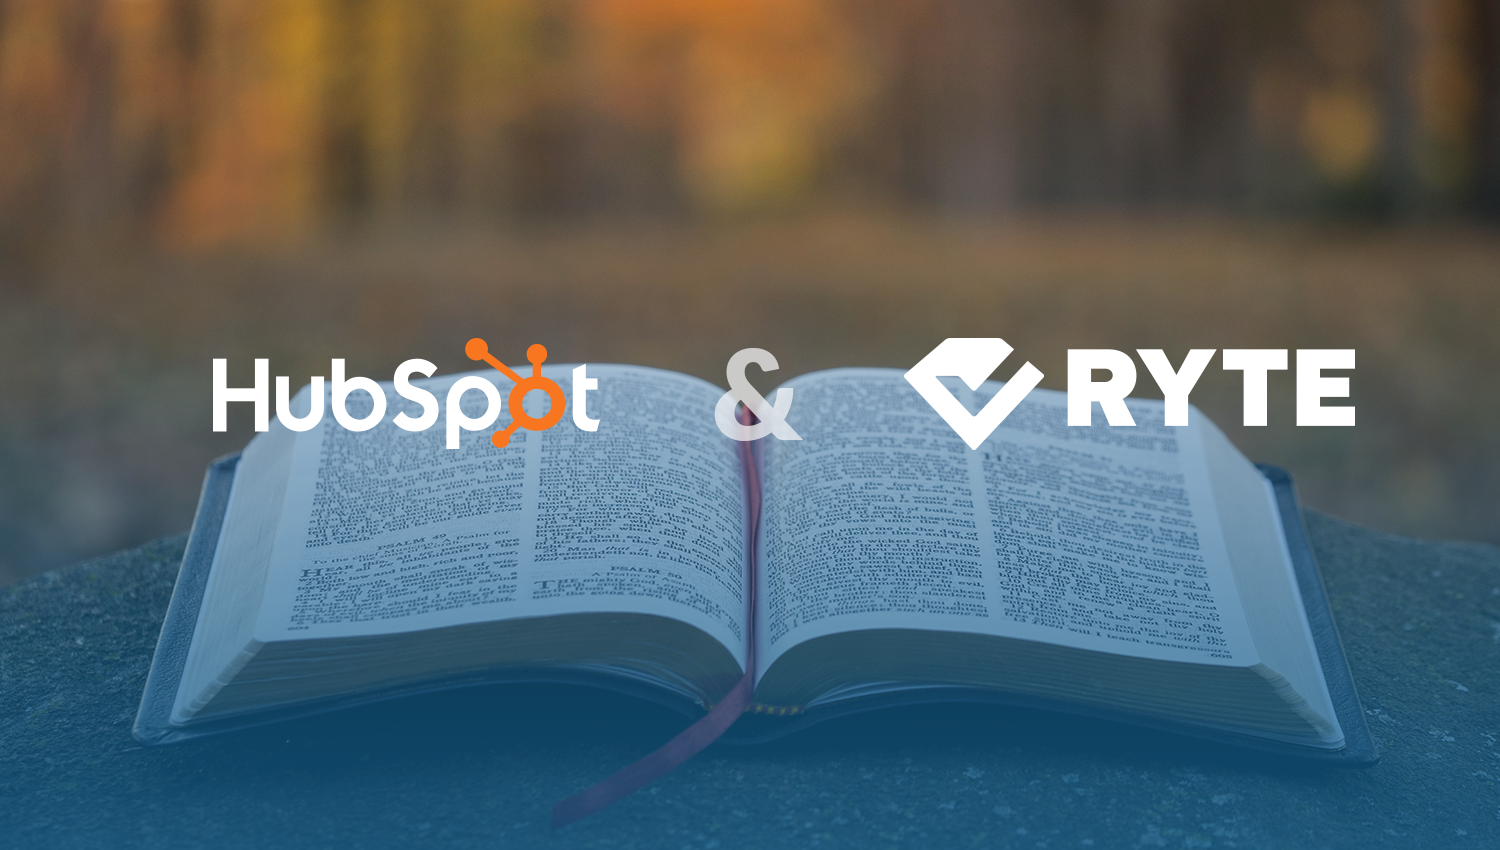 Ryte и Hubspot объединились для создания окончательного бесплатного комплекта SEO-аудита, включающего руководство по SEO-аудиту, контрольный список SEO-аудита и встроенный SEO-шаблон